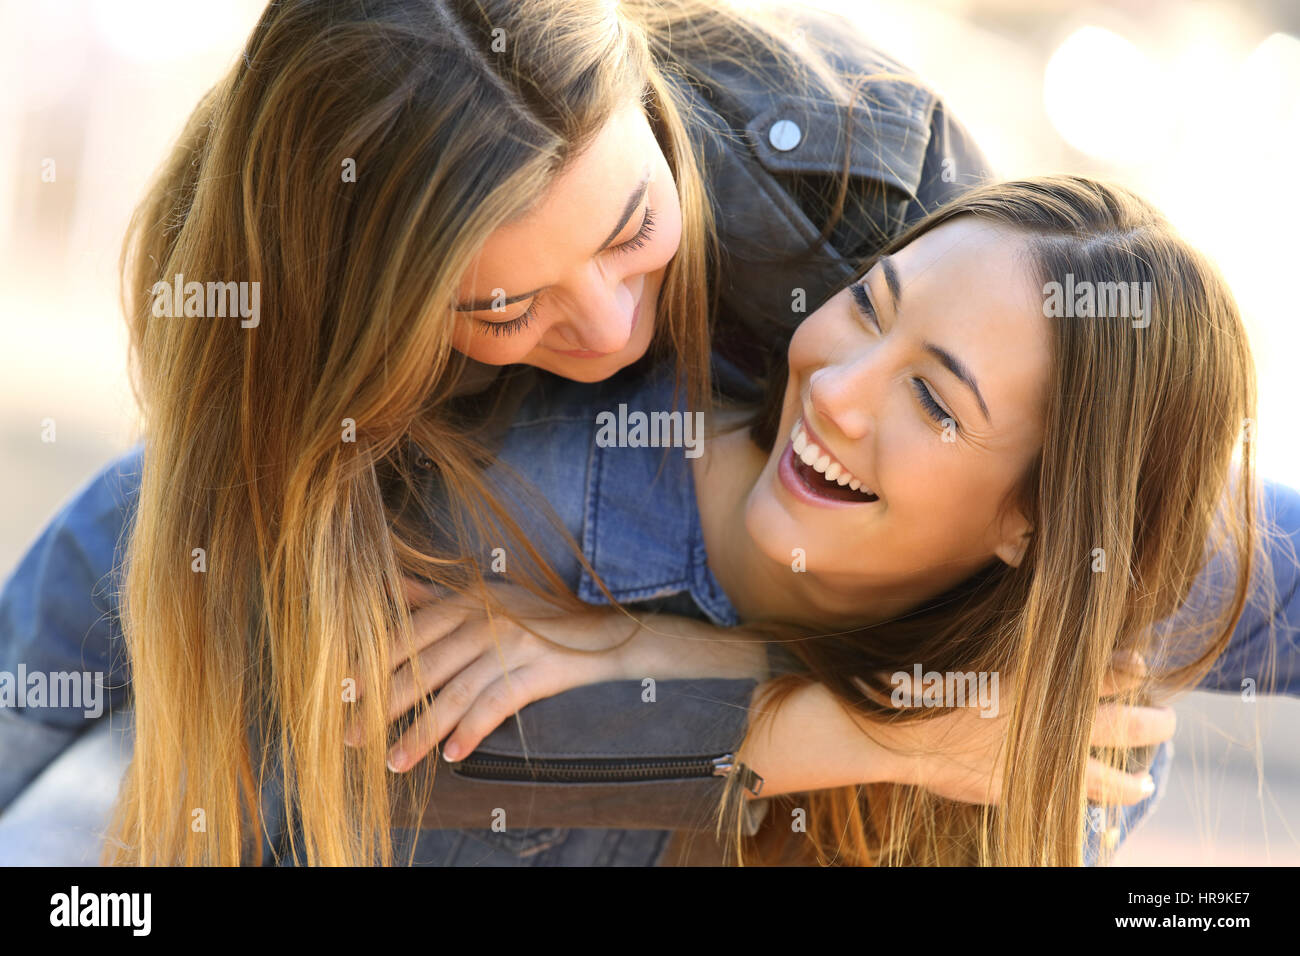 Zwei Lustige Liebevolle Freunde Scherzen Und Lachen Zusammen Auf Der Straße Stockfotografie Alamy 